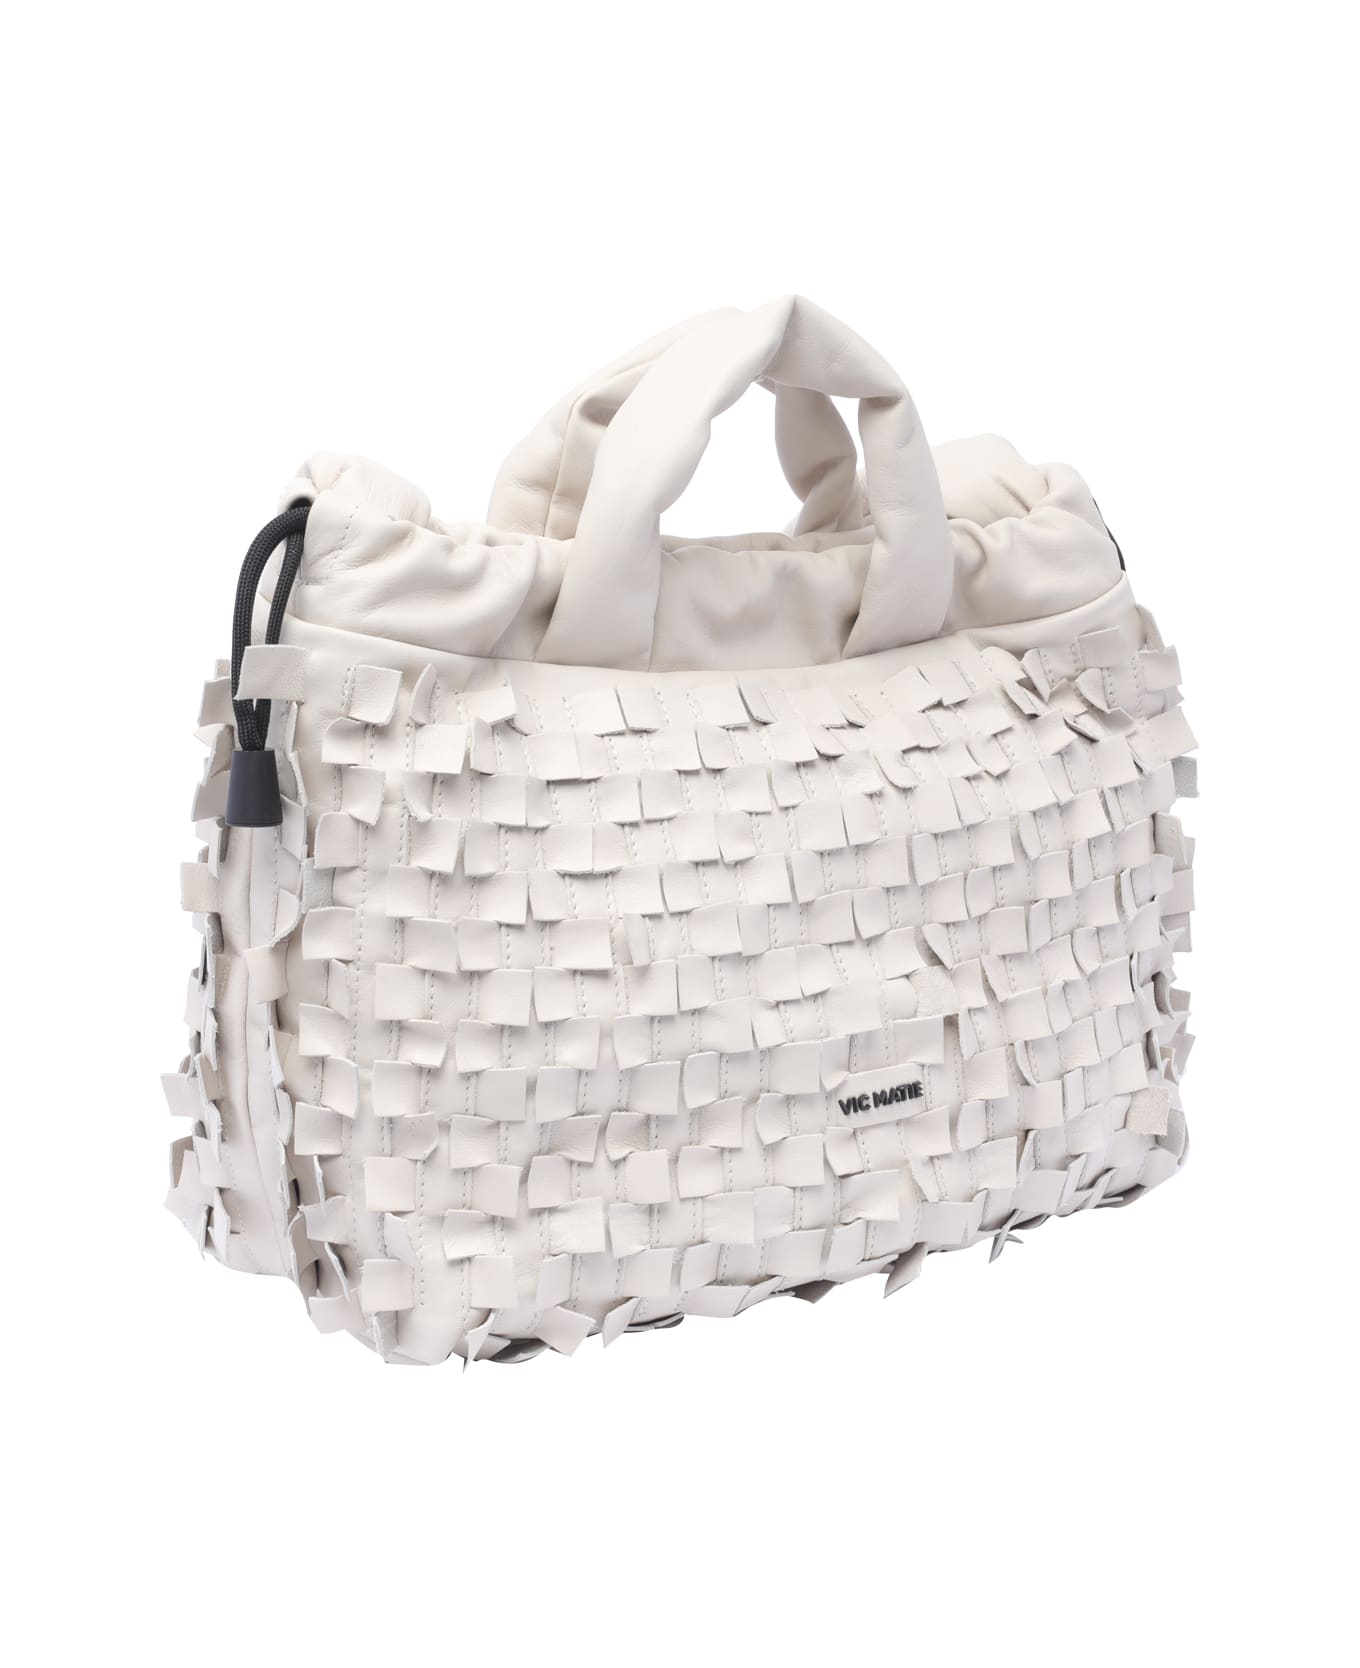 Vic Matié Travel Handbag - White